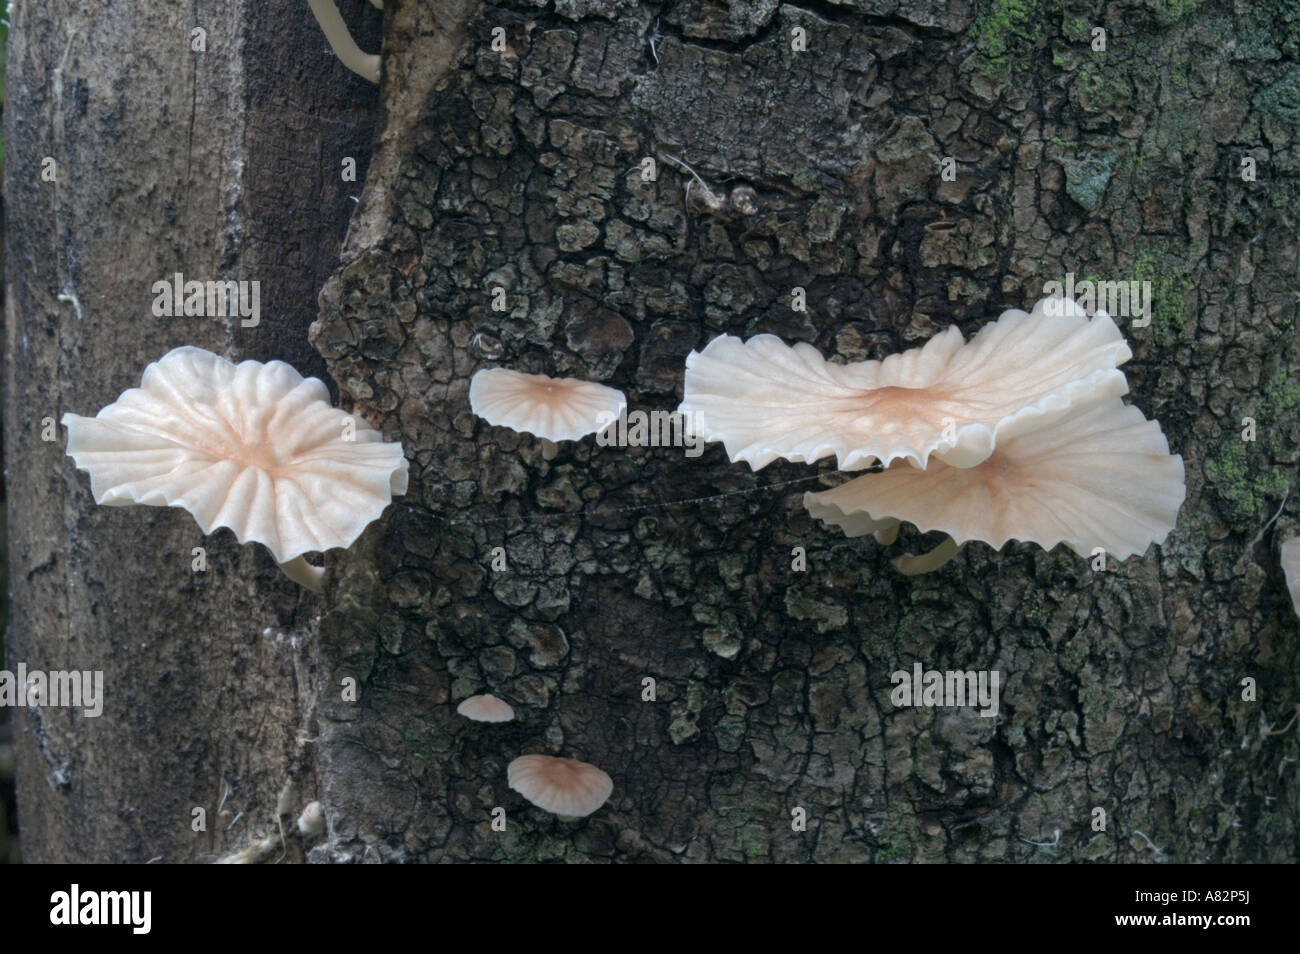 Marasmiellus candidus fungus Stock Photo